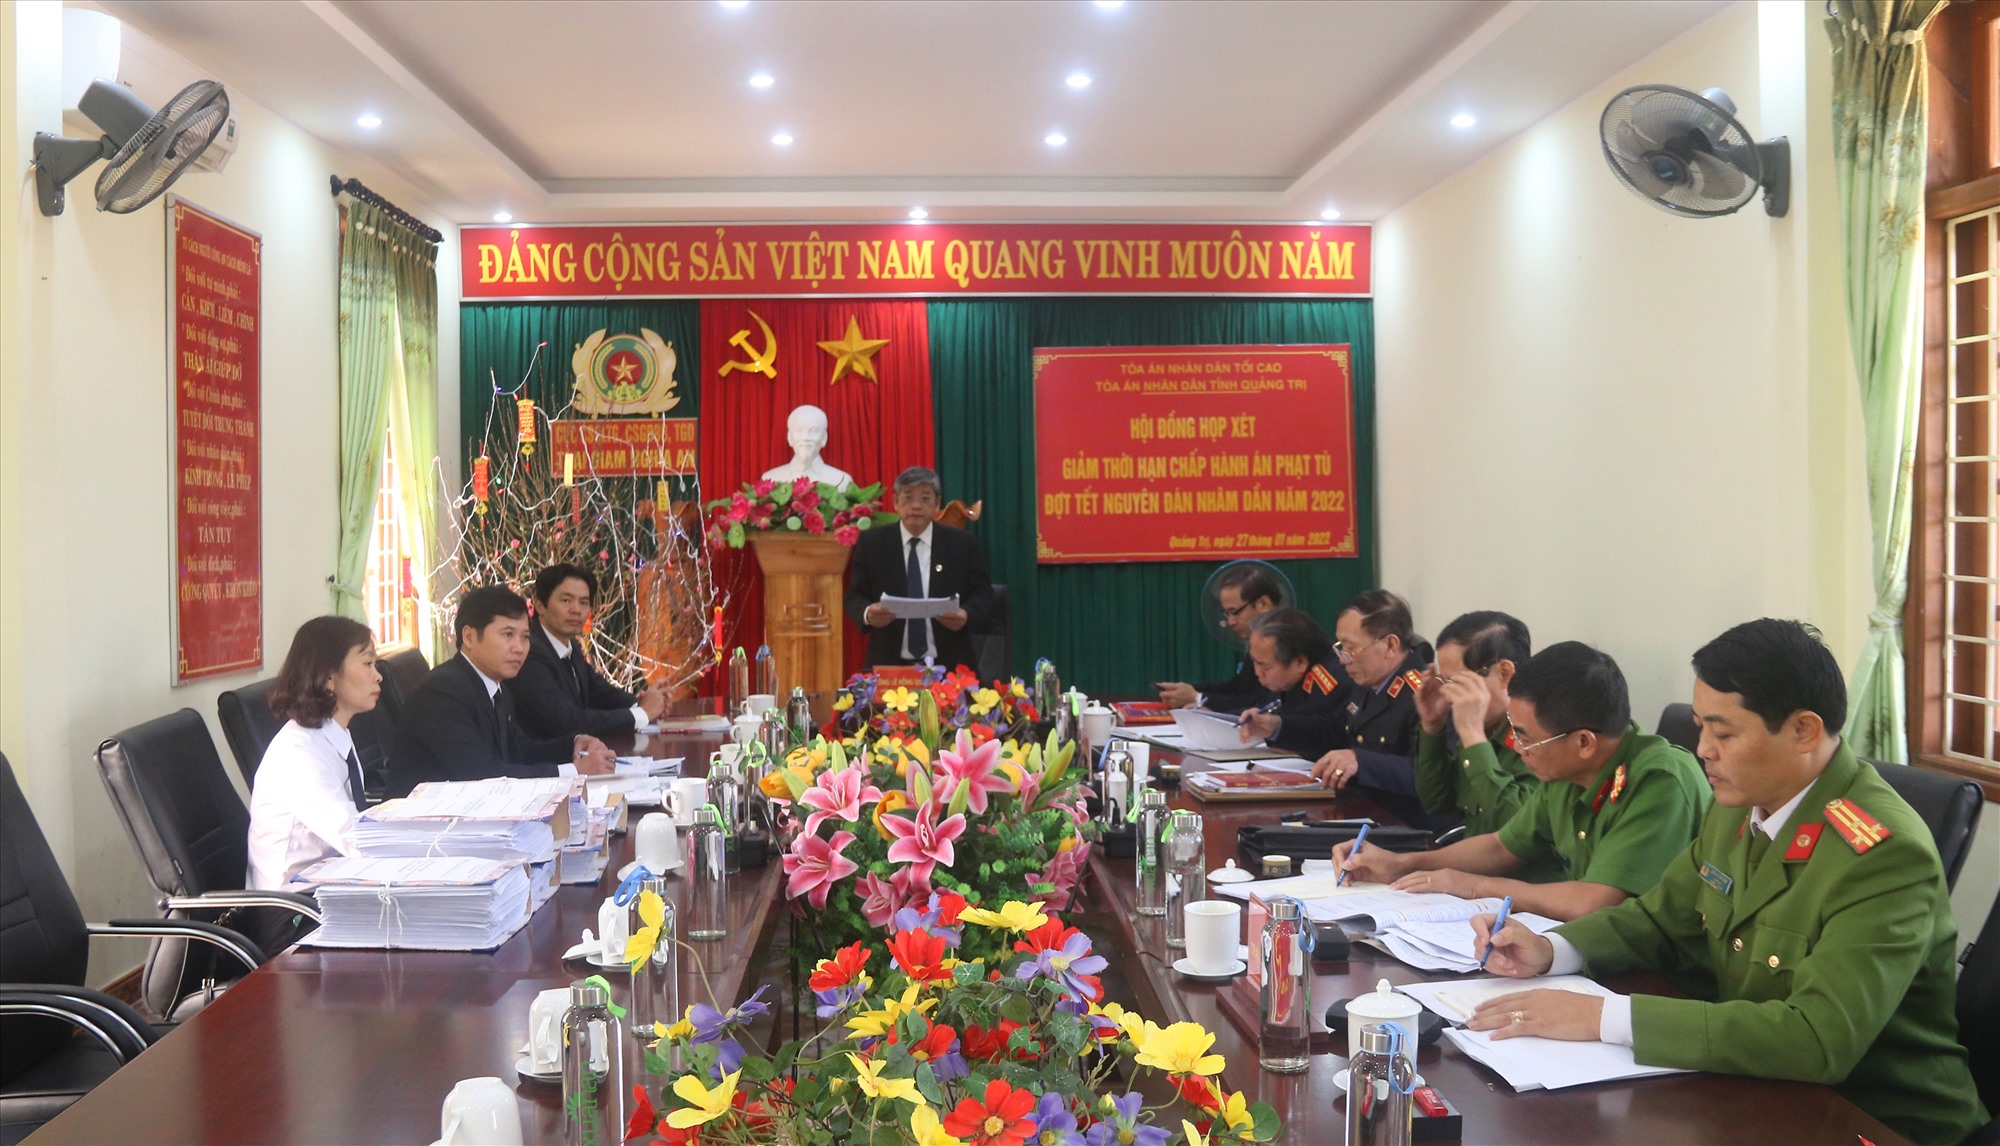 Chánh án TAND tỉnh, Chủ tịch Hội đồng xét giảm thời hạn chấp hành án phạt tù tỉnh Lê Hồng Quang đưa ra kết luận của hội đồng về giảm án - Ảnh: N.B